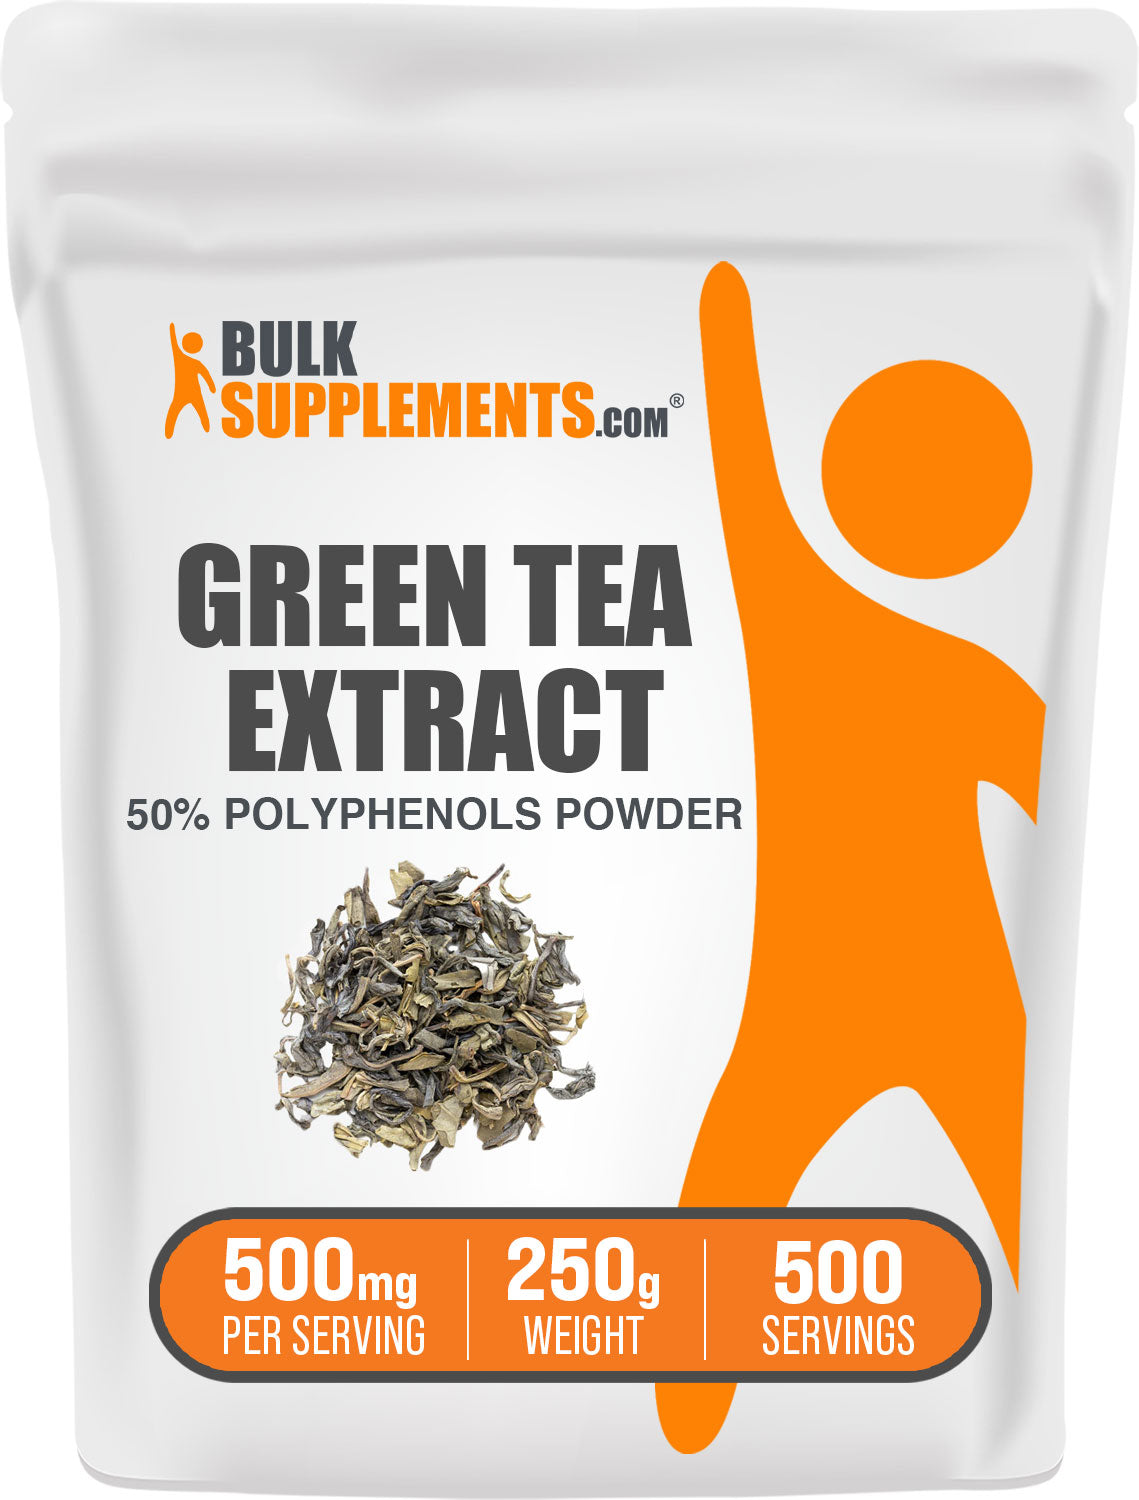 BulkSupplements.com Green Tea Extract 50% Polyphenols Powder 250g Bag